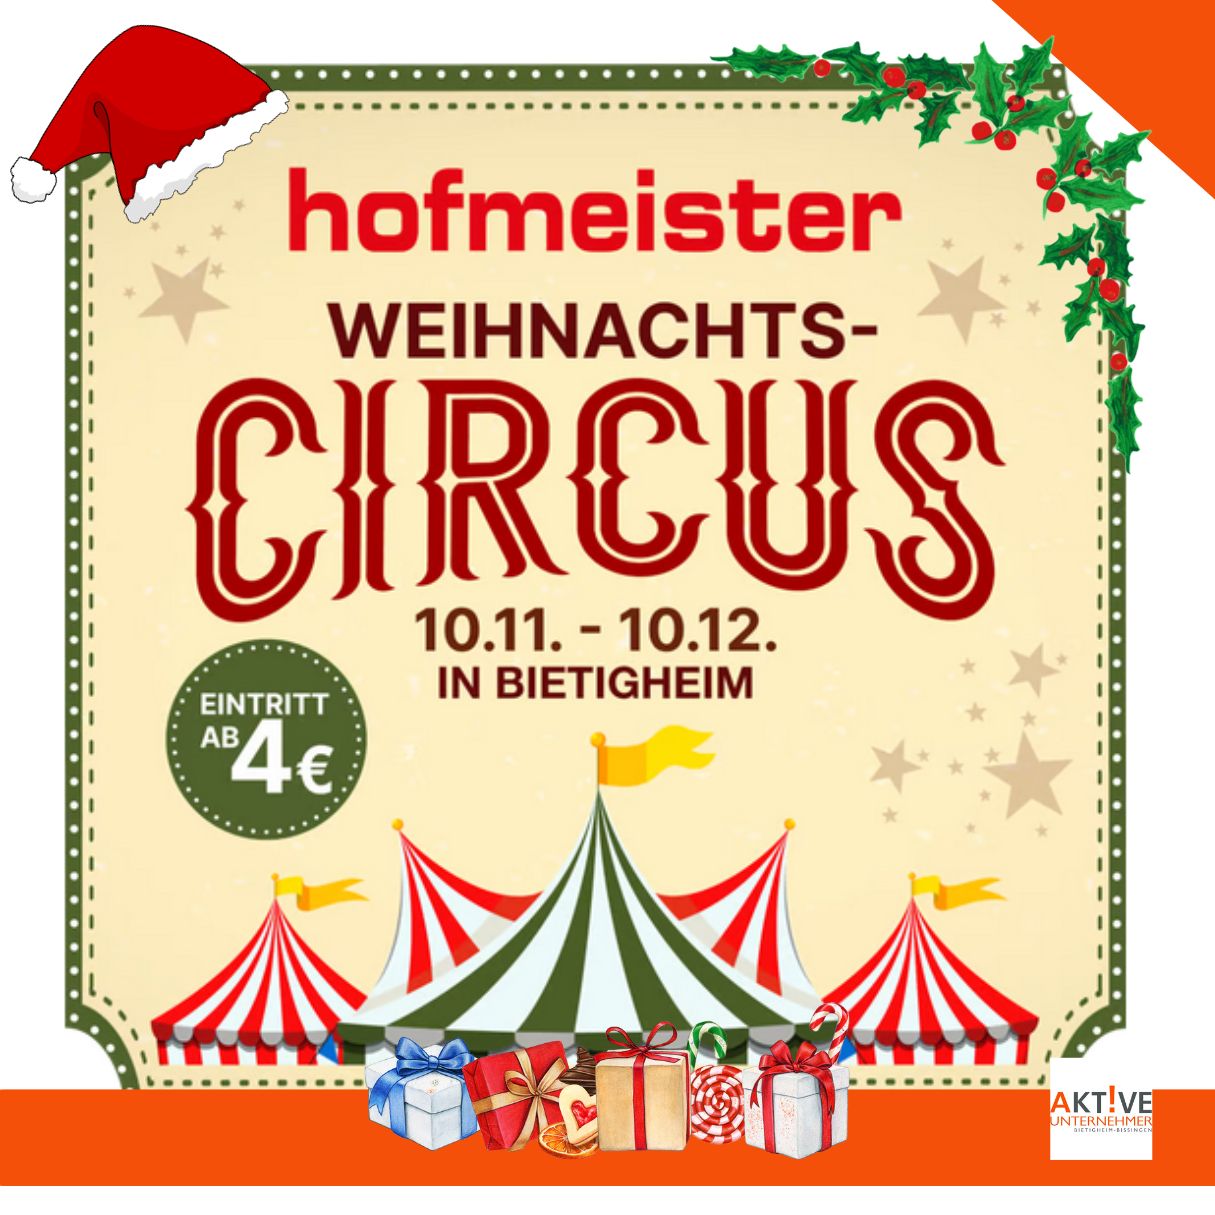 Hofmeister, Mitglied, Aktive Unternehmer, Gewerbeverein, Circus, Weihnachten, Bietigheim-Bissingen